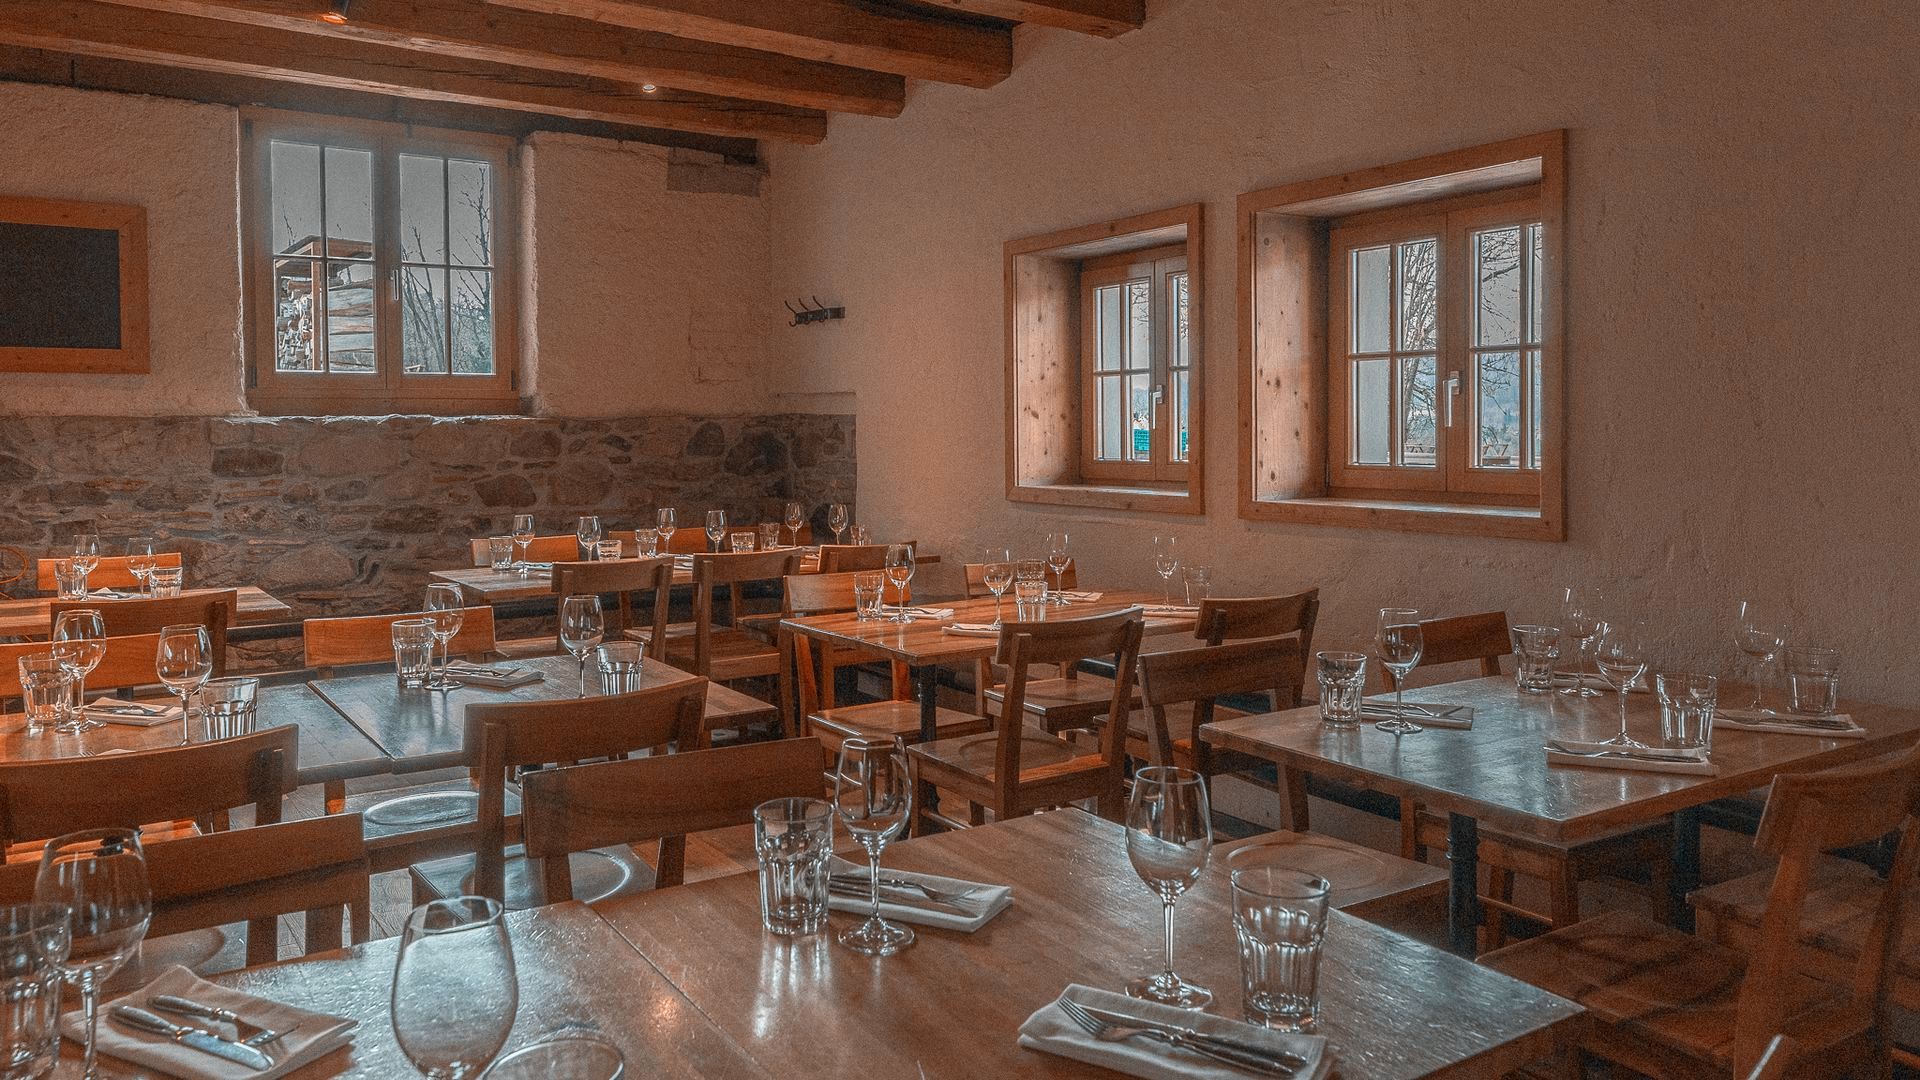 Restaurant Chäsalp interior stable